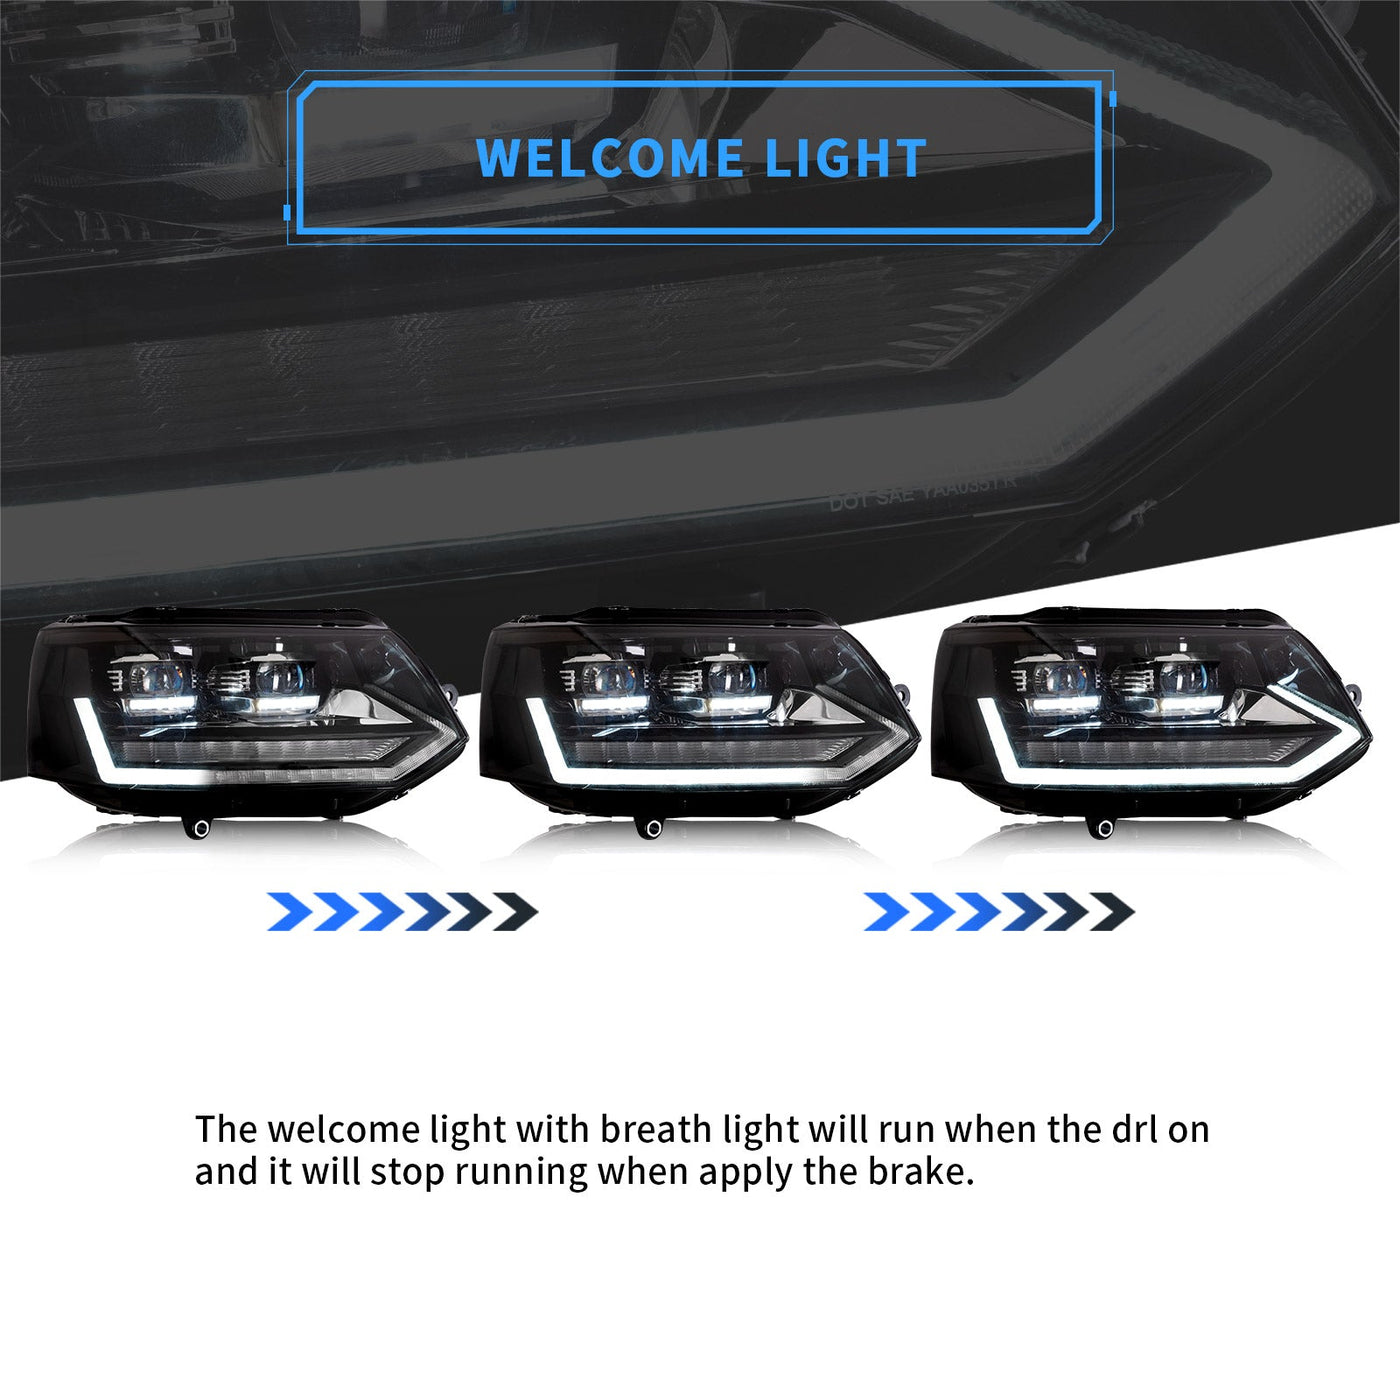 VLAND LED Projector Headlights For Volkswagen Transporter Caravelle Multivan T5 Base/SE/Sportline 2010-2015